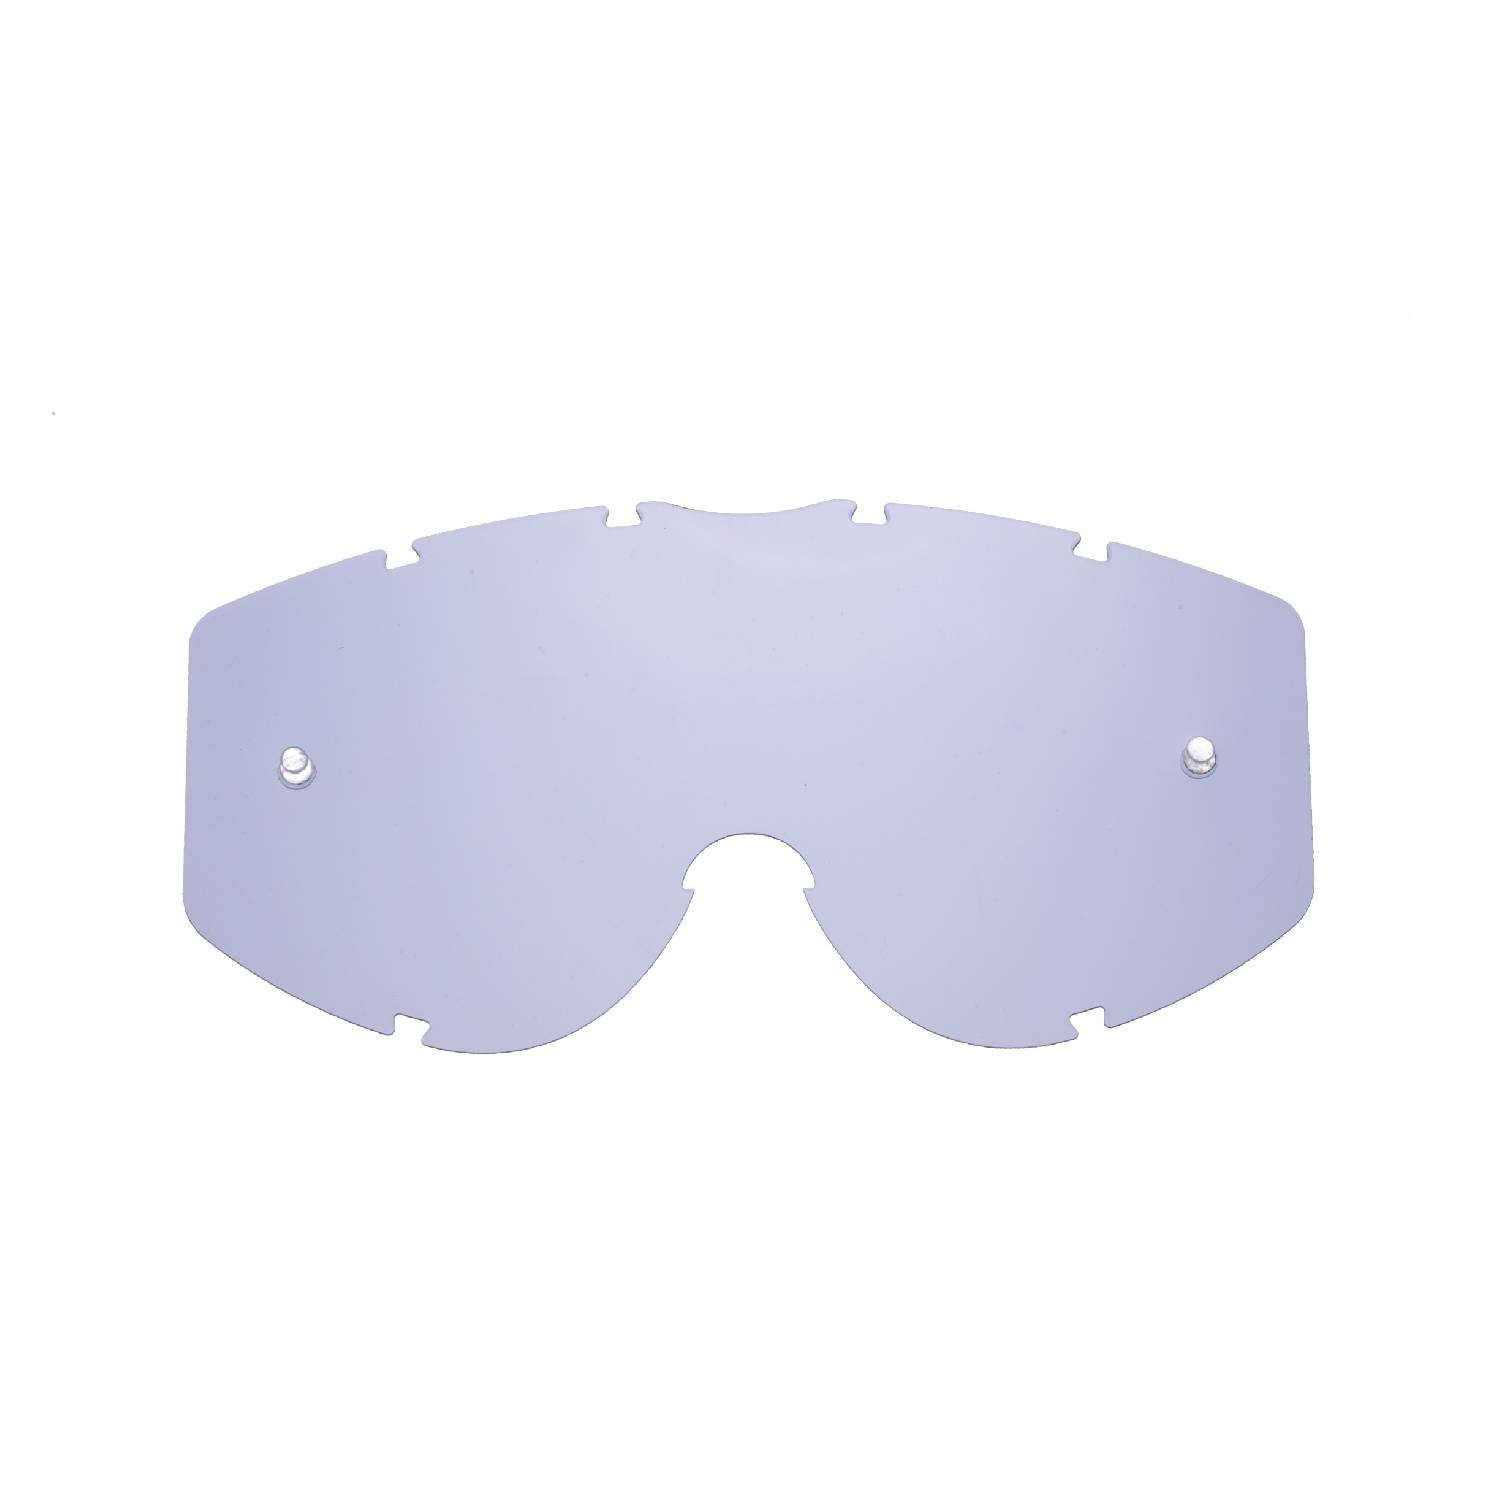 smokey replacement lenses for goggles compatible for Progrip 3200 Venom / 3450 Riot / 3400 Menace / 3201 Atzaki / 3204 Dark Side / 3301 Naswa goggle